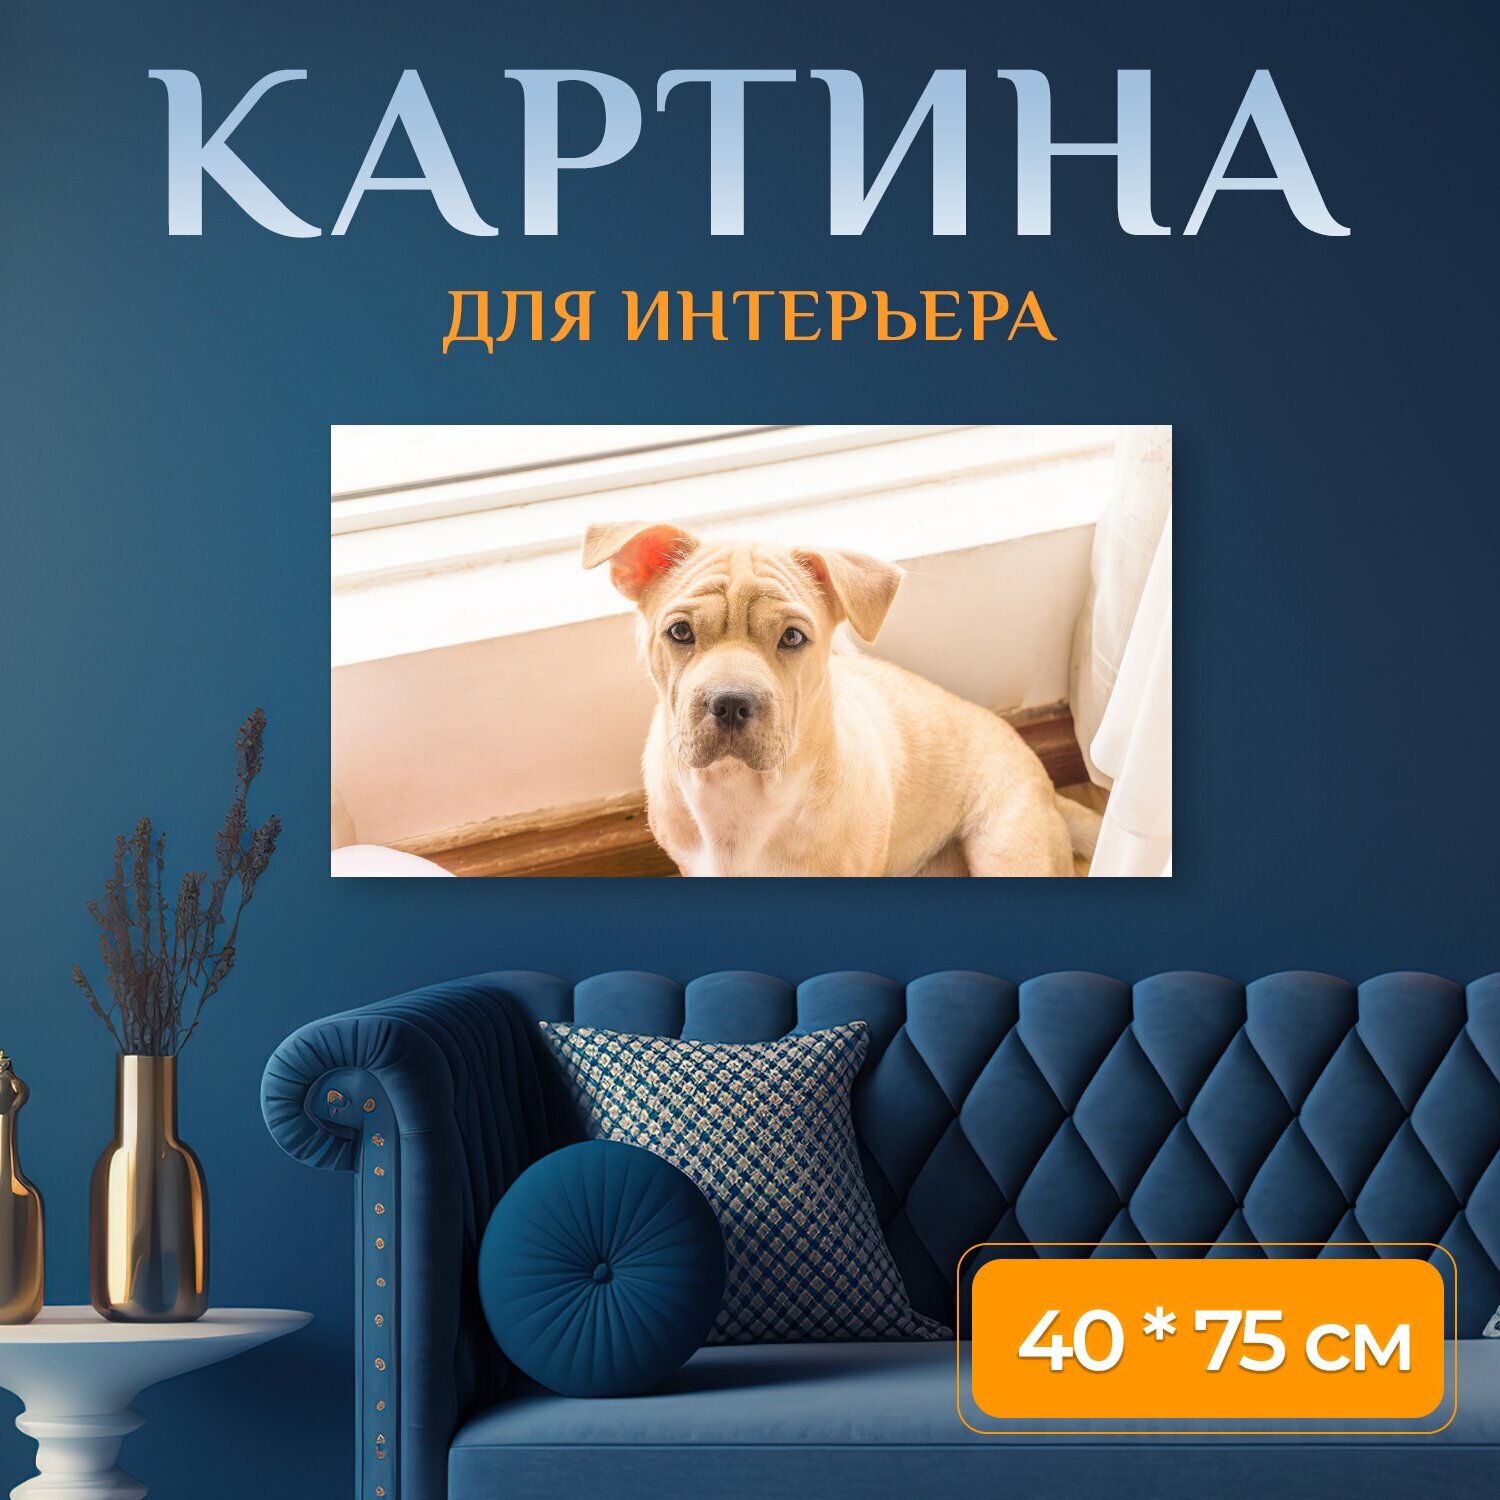 Картина на холсте "Собака домашний питомец дом" на подрамнике 75х40 см. для интерьера